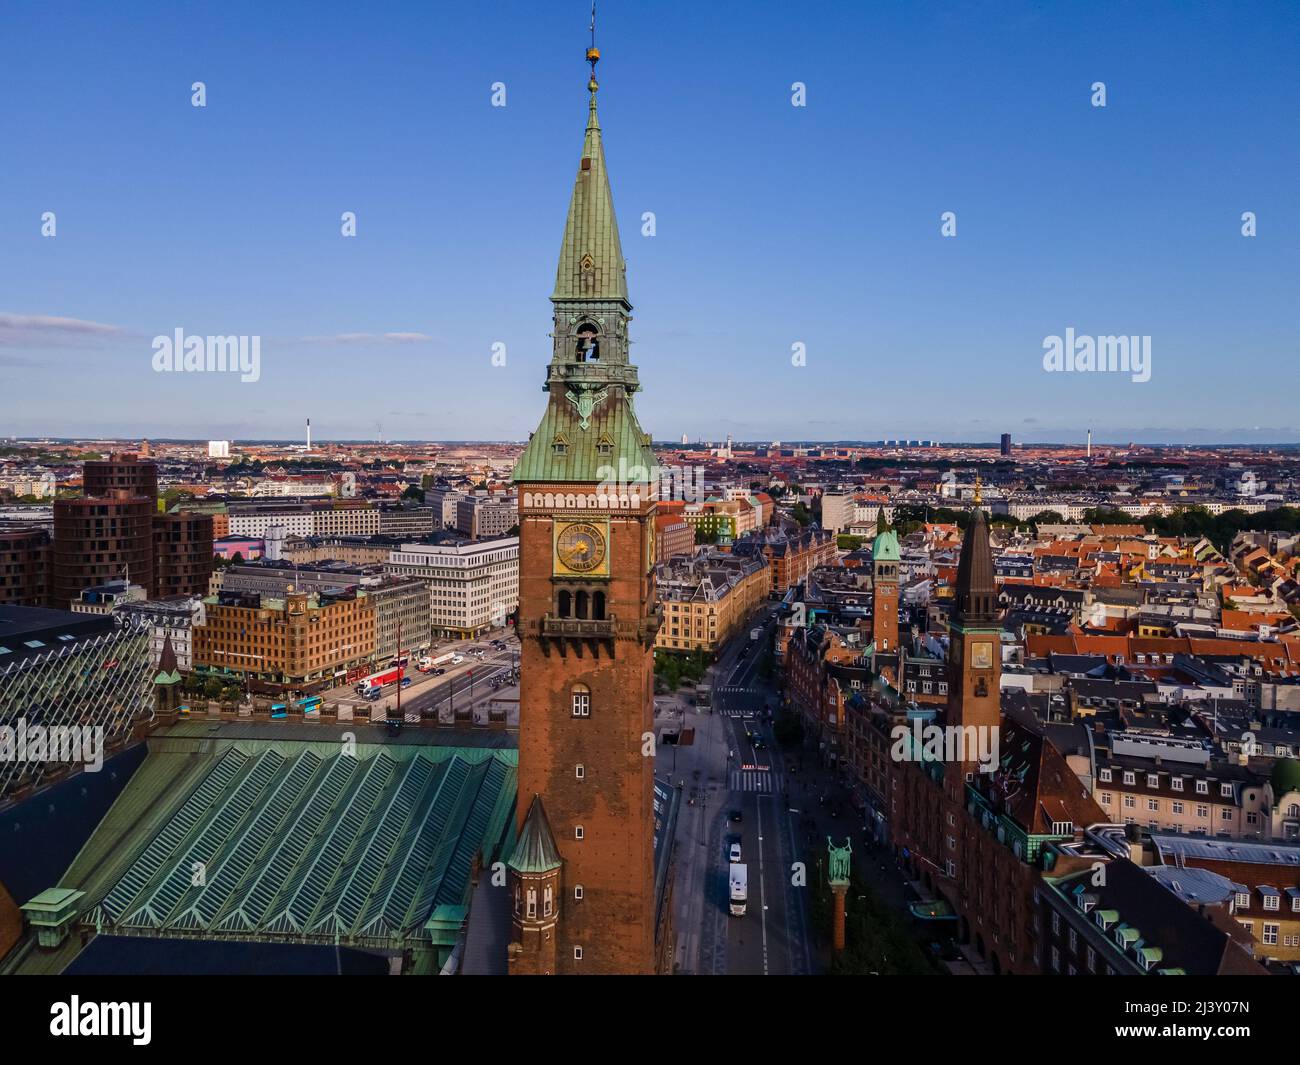 Belle vue aérienne cinématographique de la ville de Copenhague Danemark et des plazas, jardins Banque D'Images